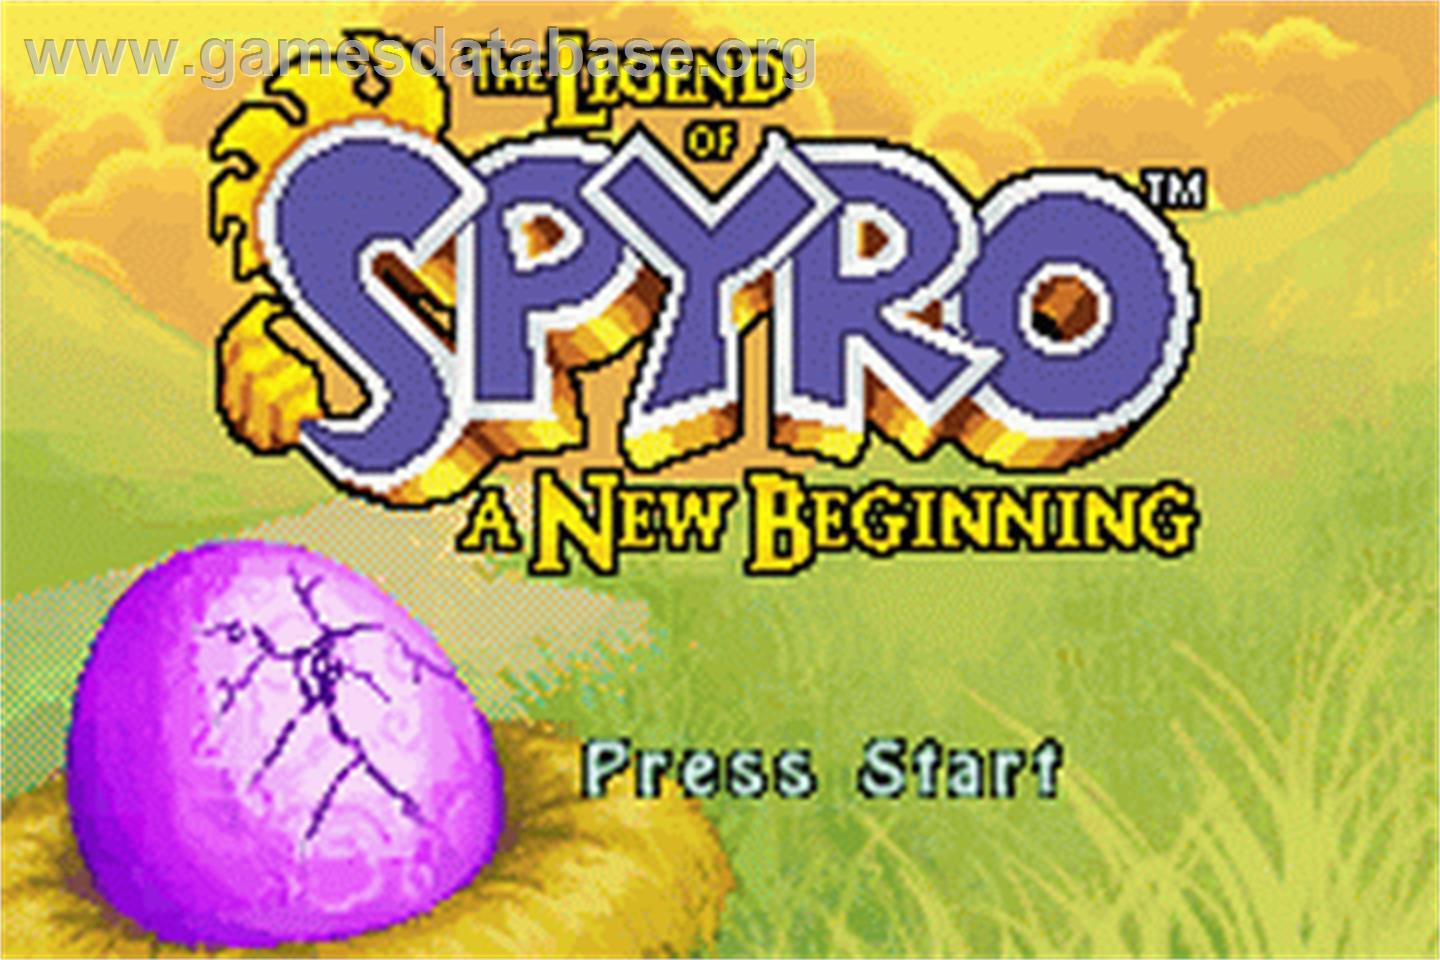 Legend of Spyro: A New Beginning - Nintendo Game Boy Advance - Artwork - Title Screen